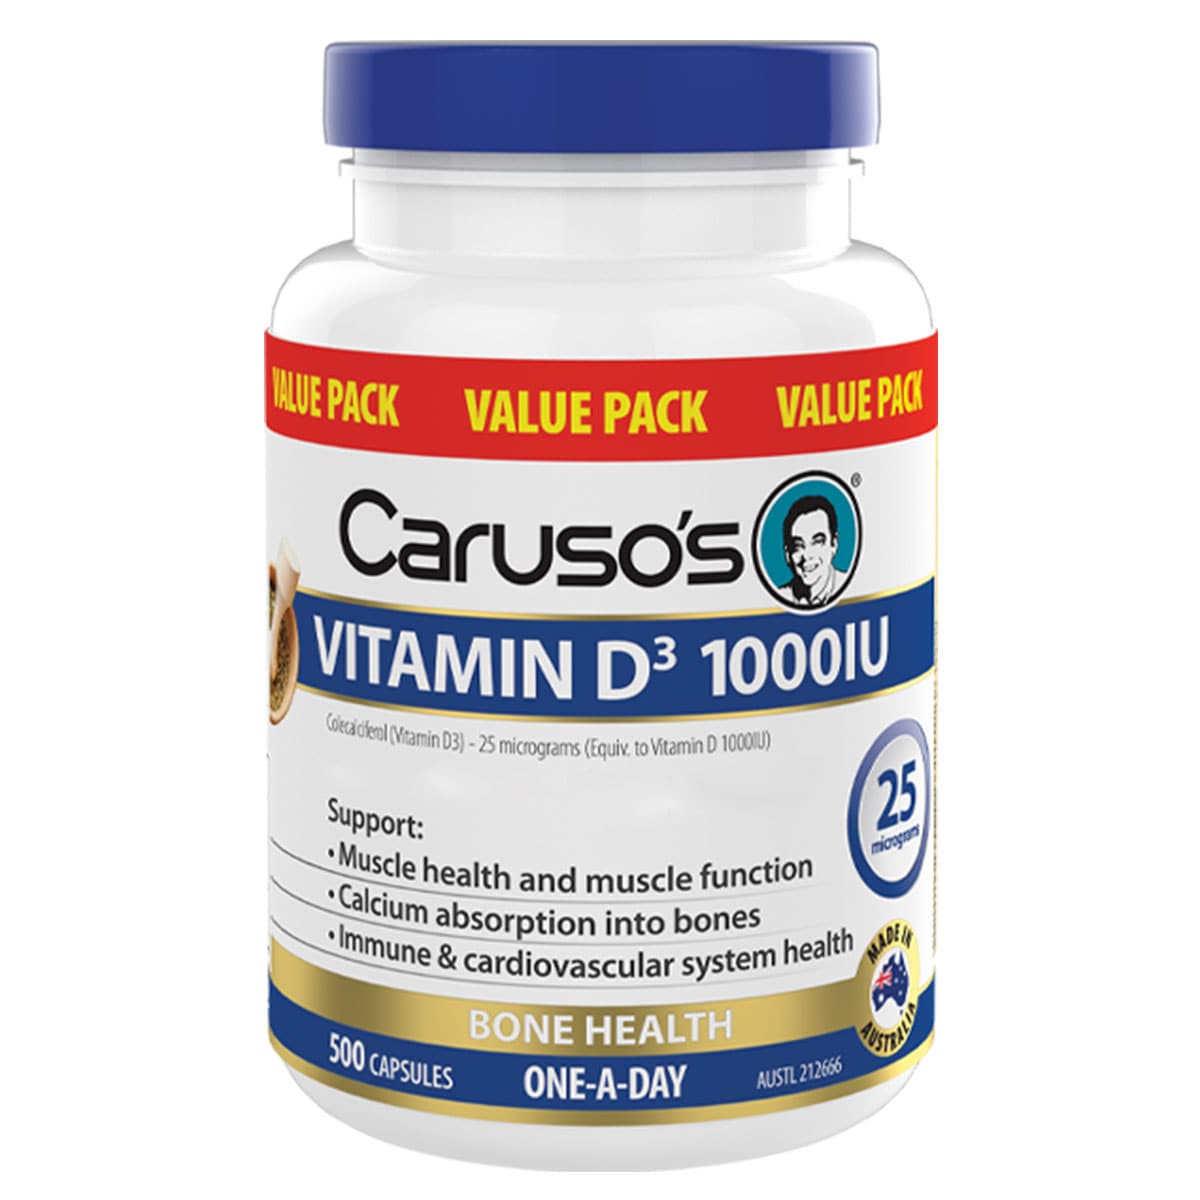 Carusos Vitamin D3 1000Iu 500 Capsules